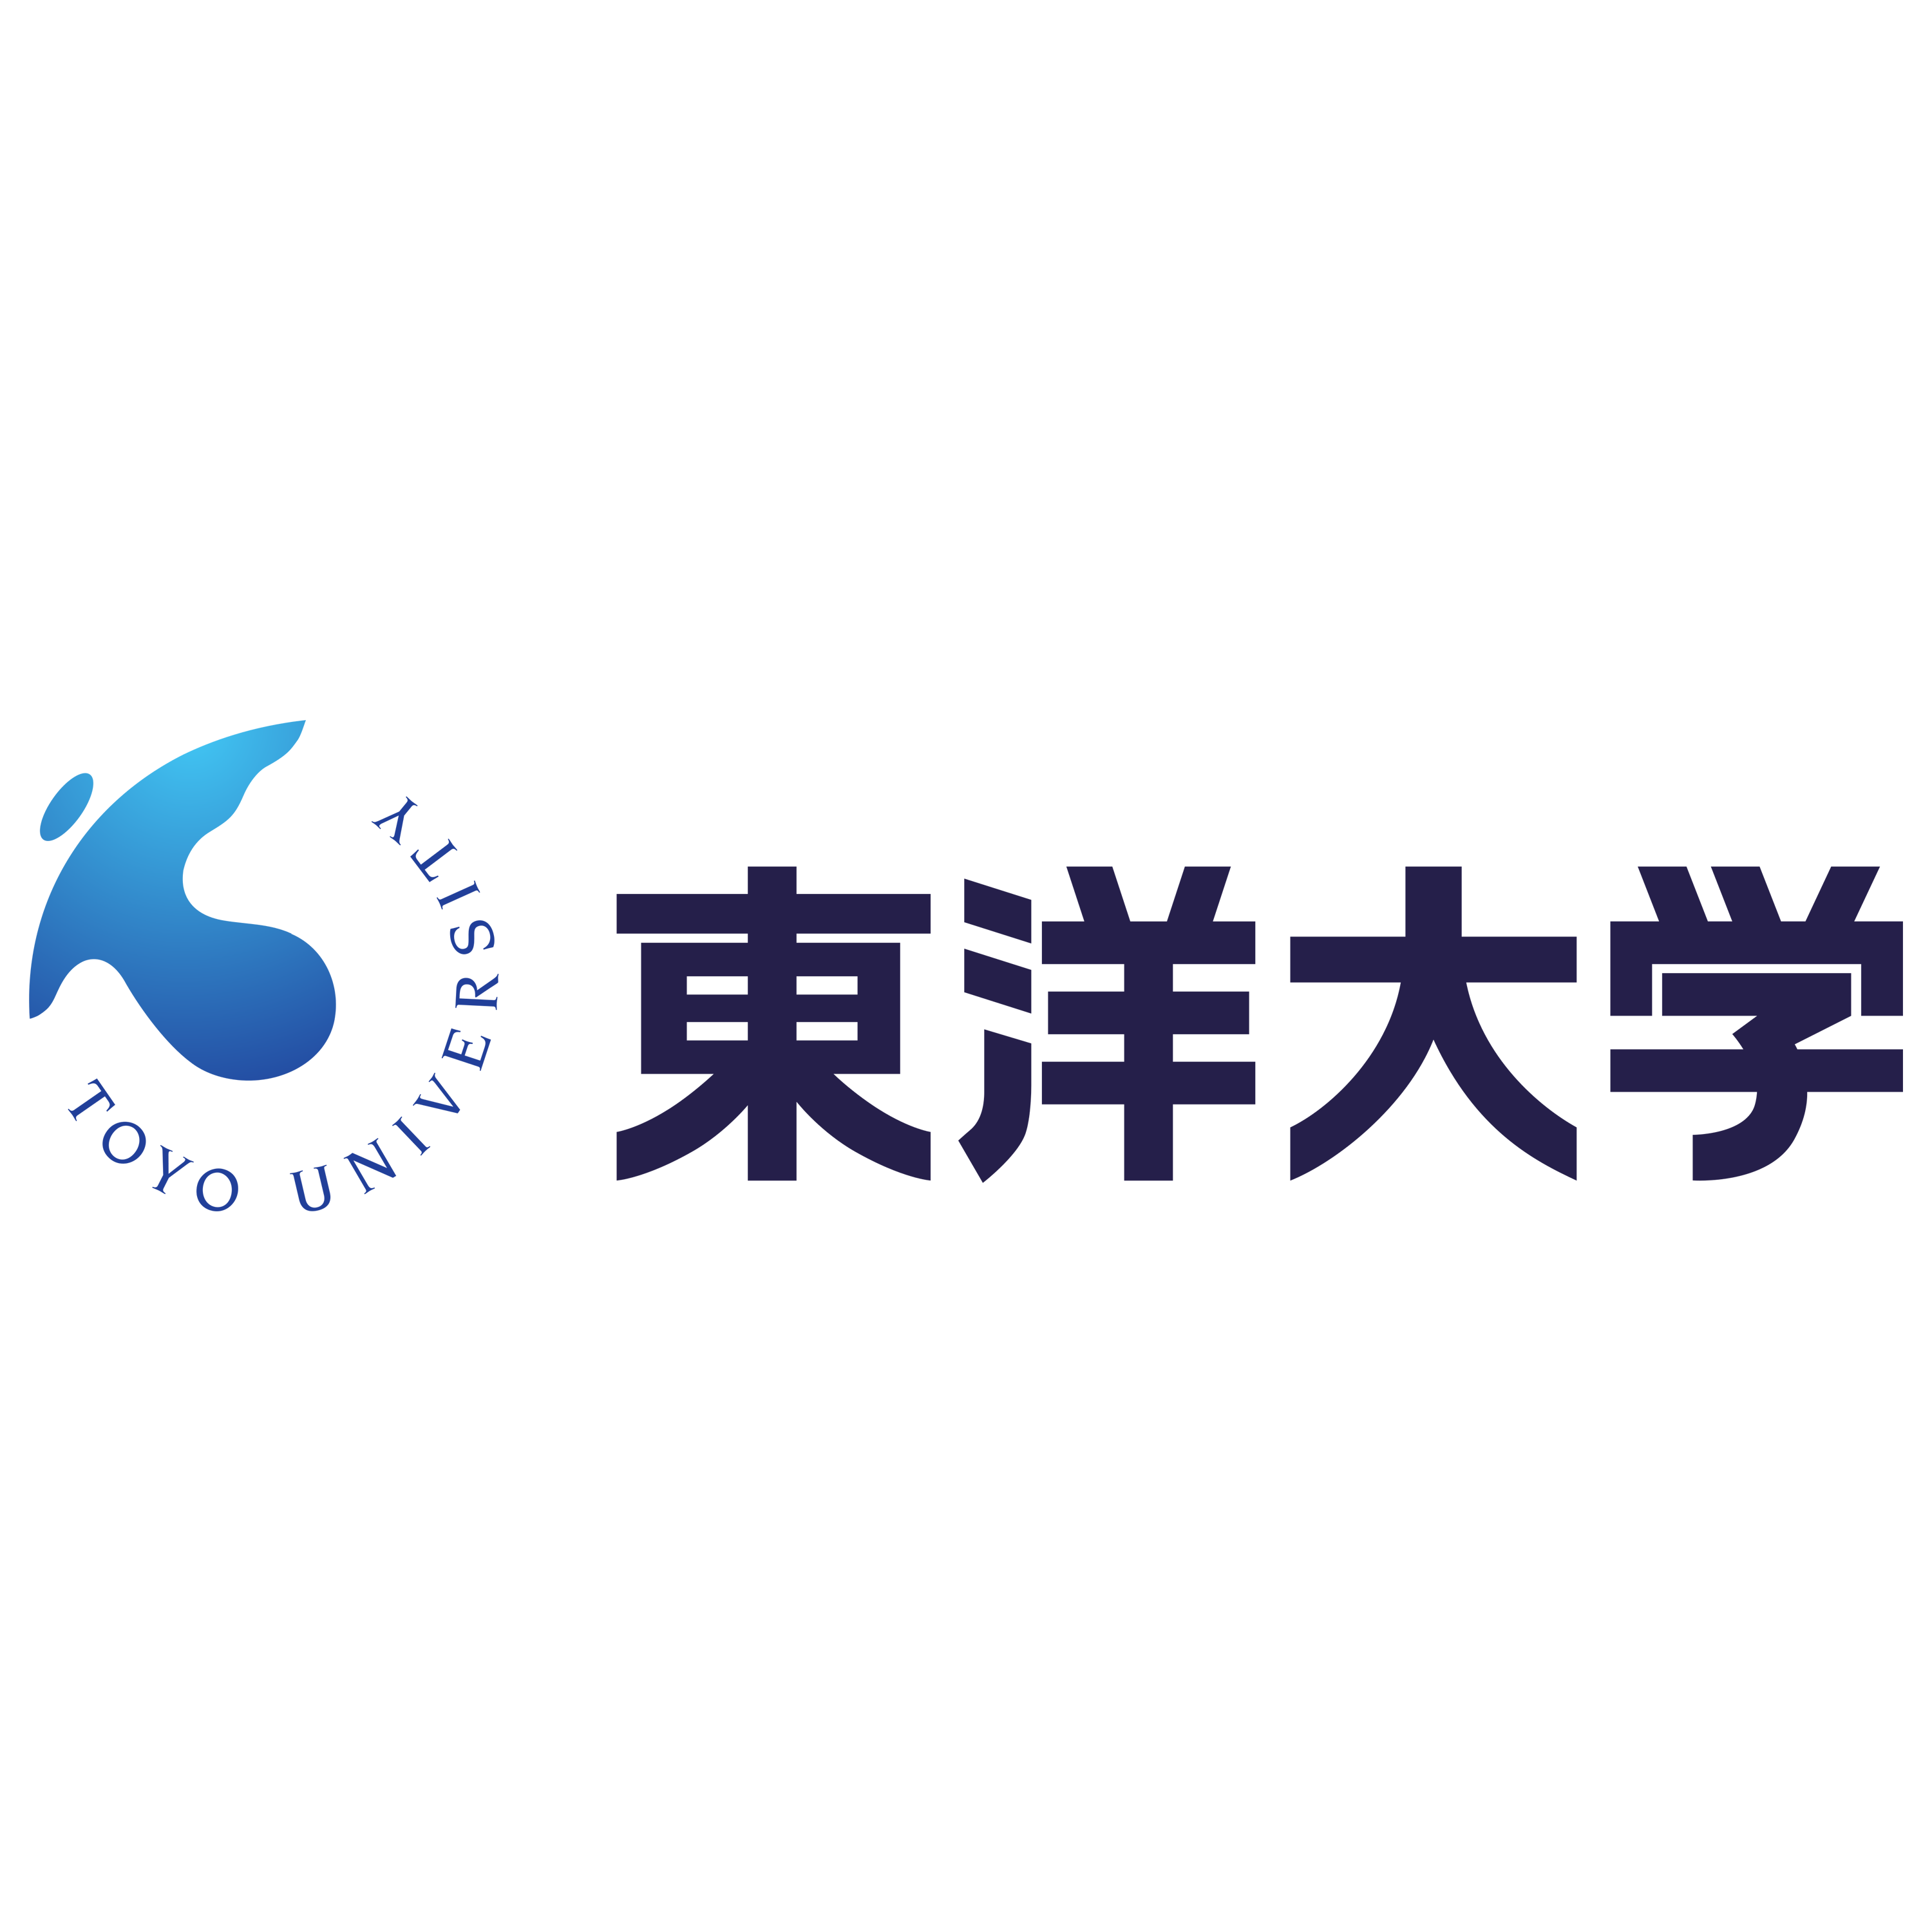 Toyo University Logo Transparent Image